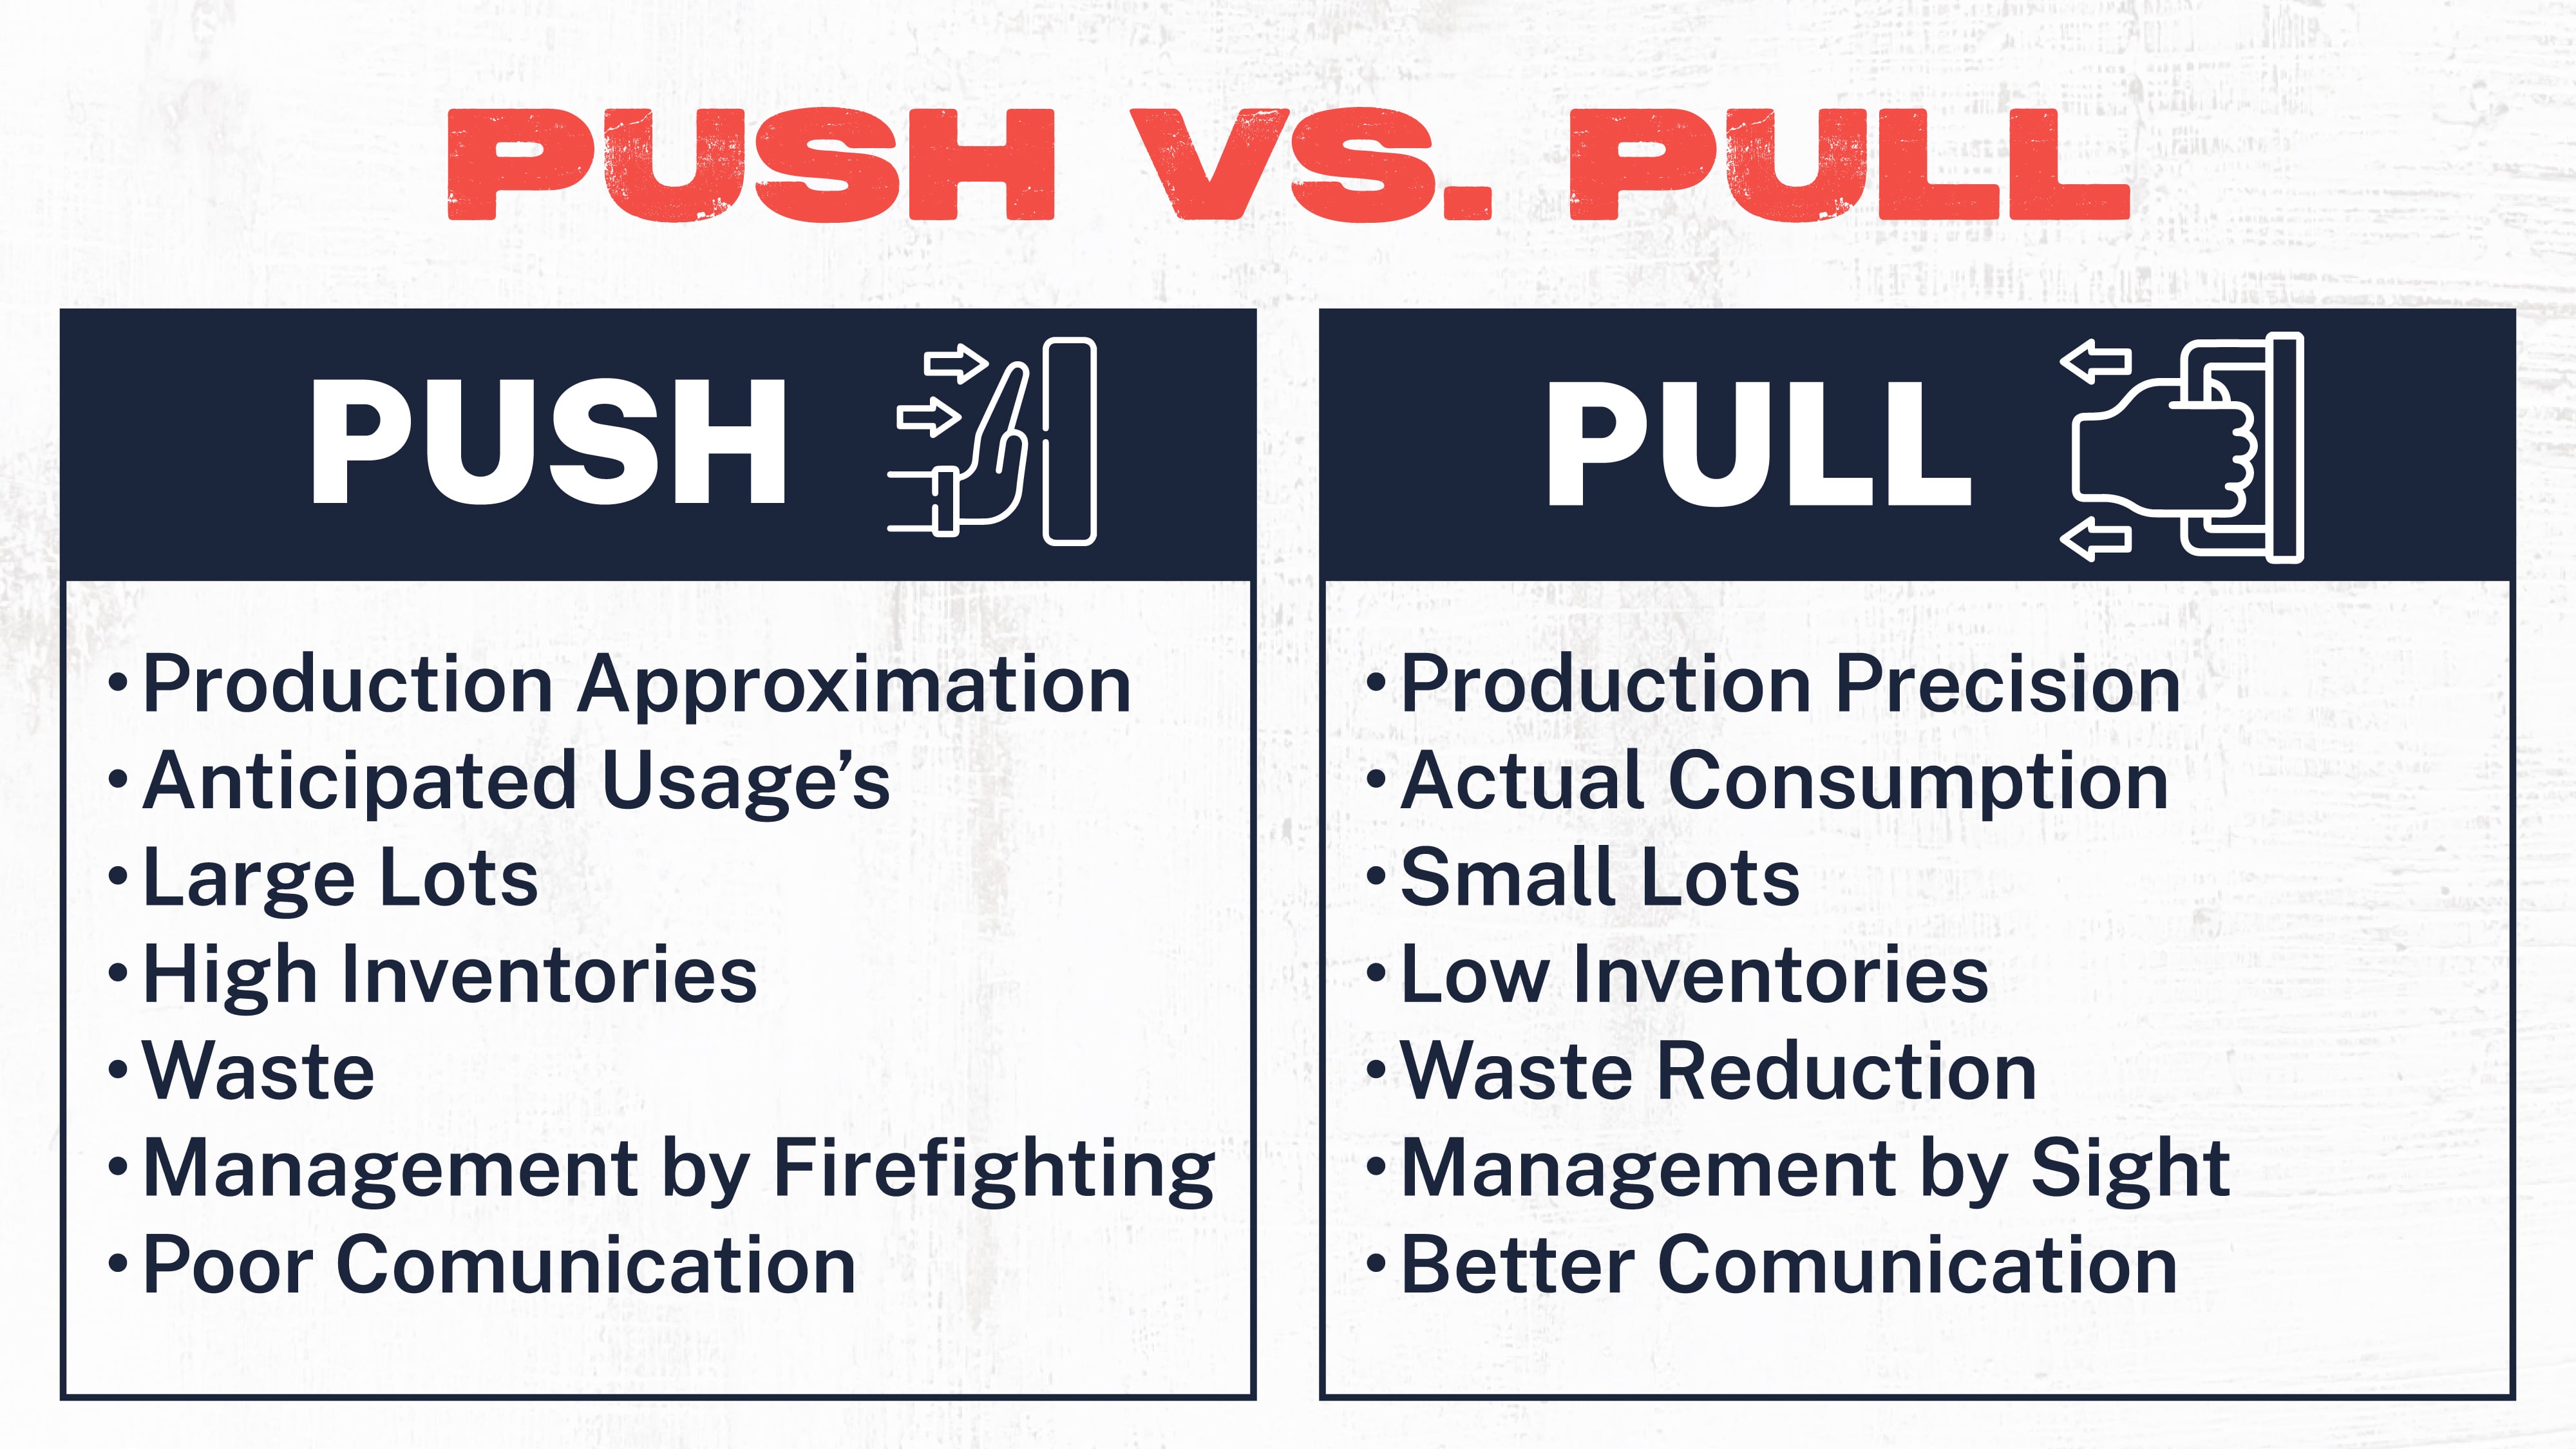 PUSH VS. PULL